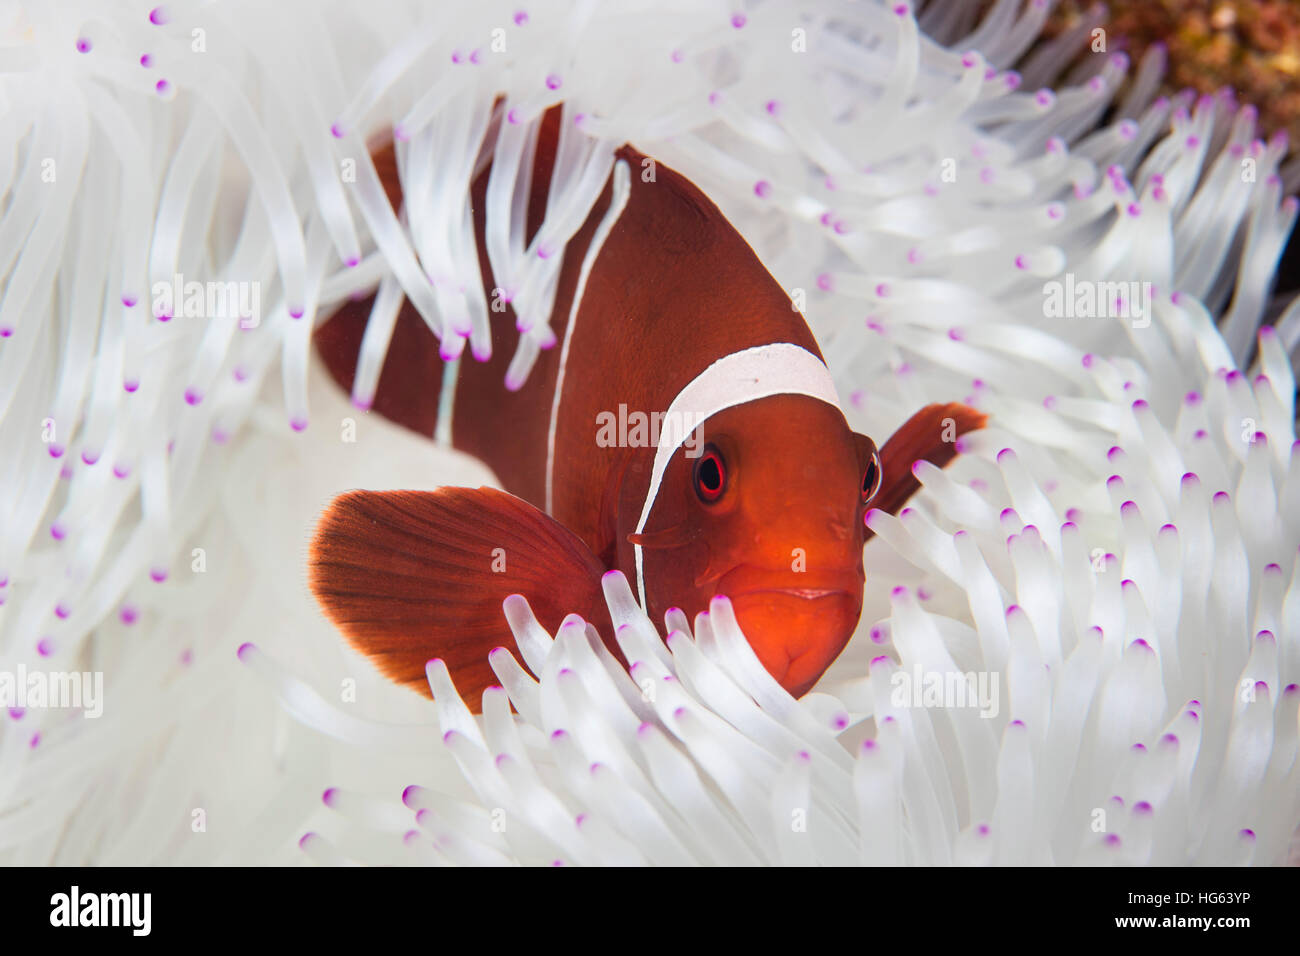 Un dorso-cheeked anemonefish nuota fra i tentacoli del suo host anemone. Foto Stock